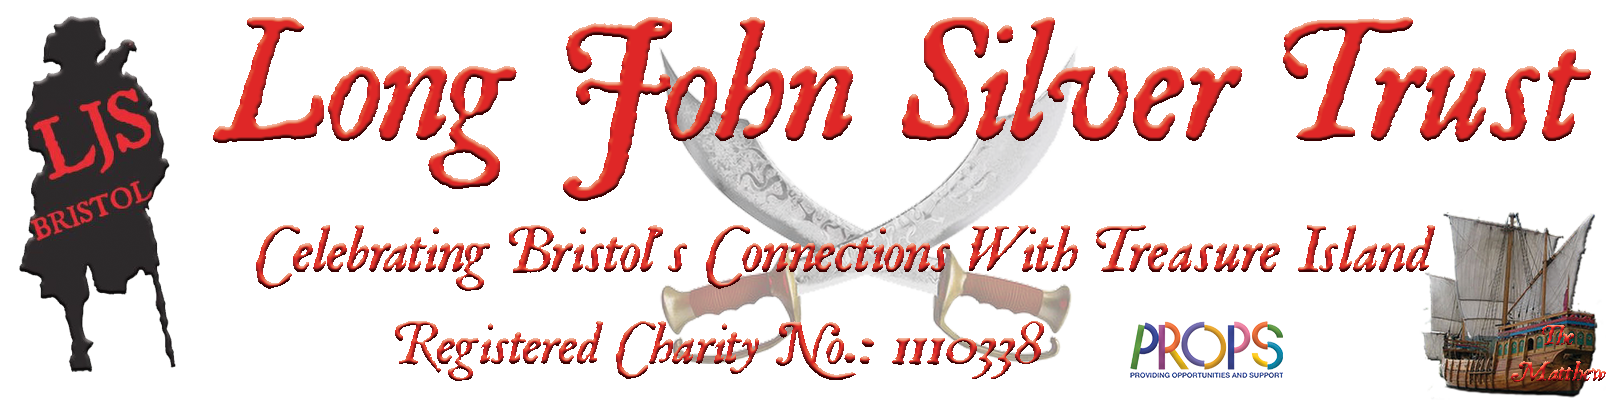 Long John Silver Trust Header